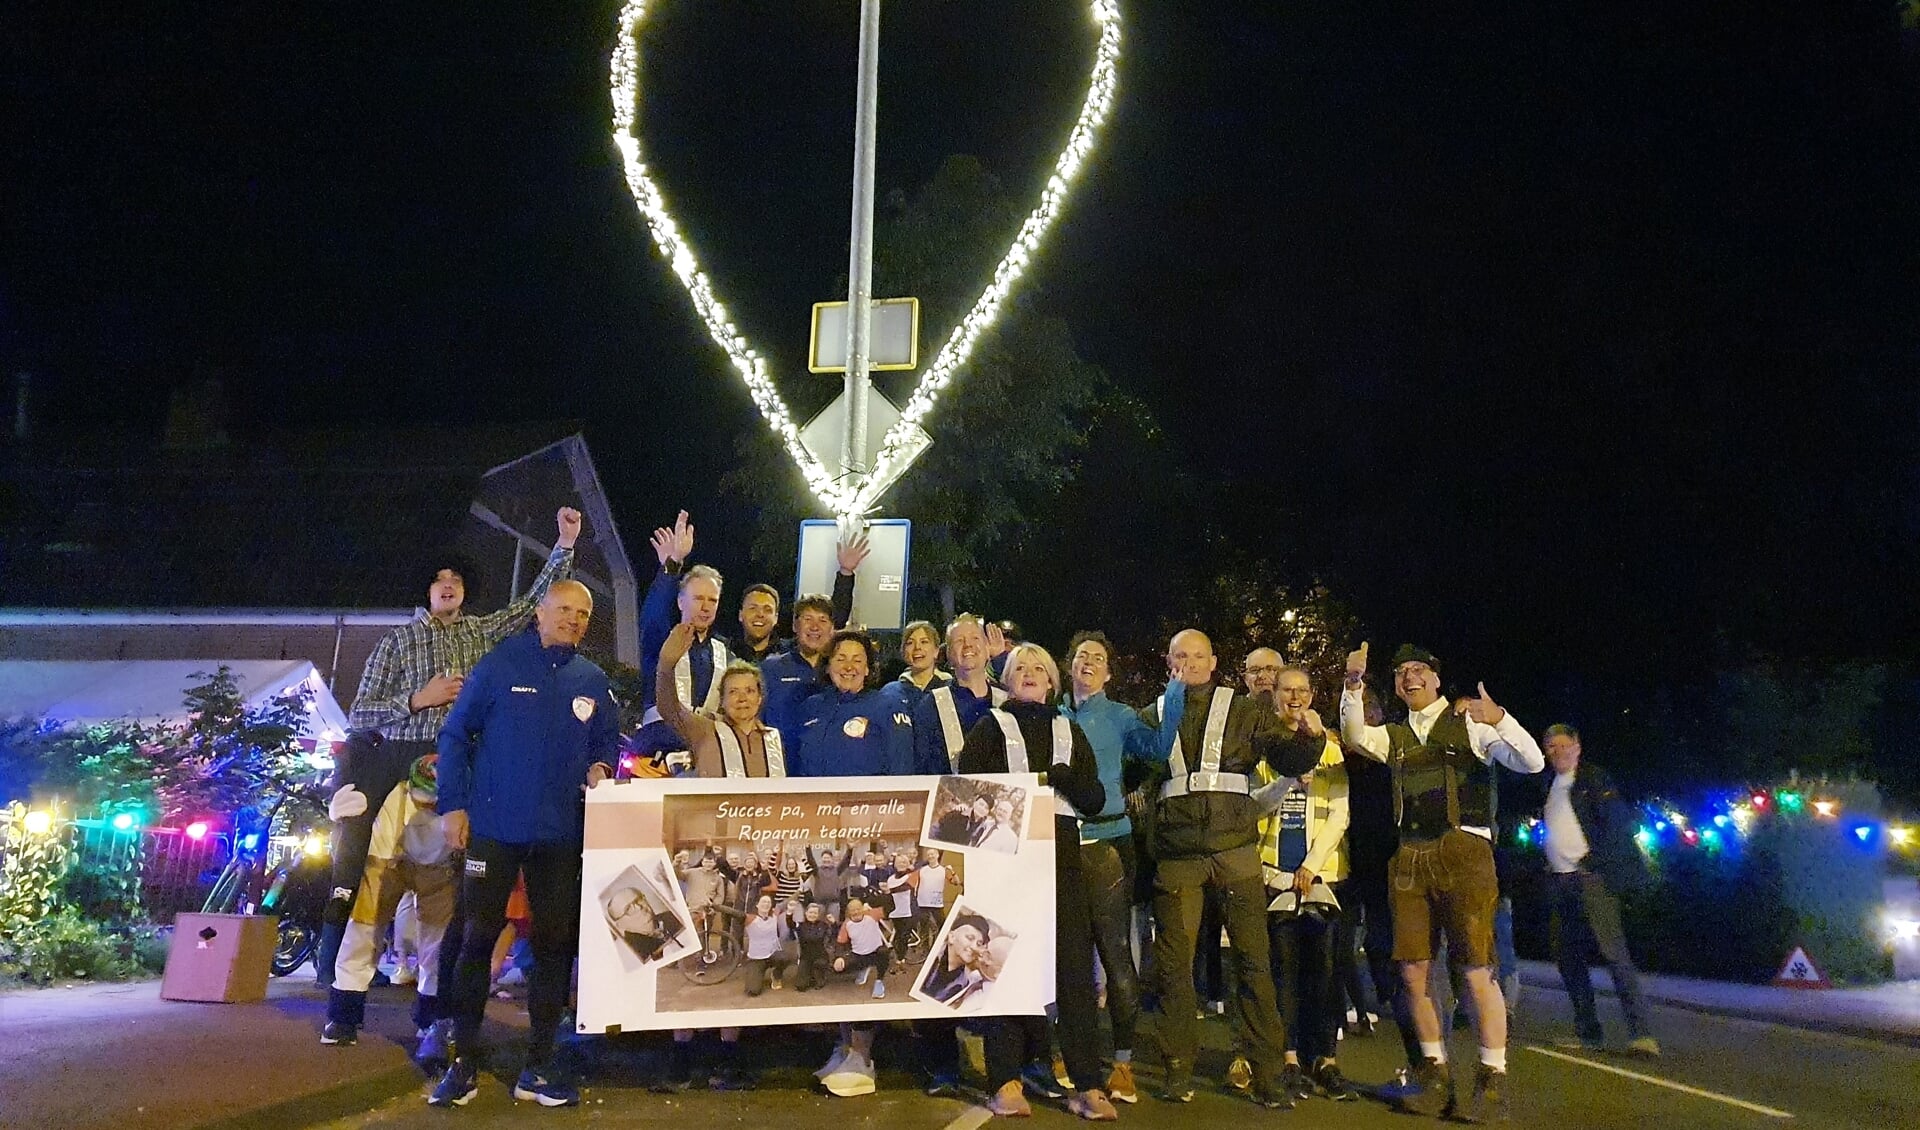 Roparun Team Climax Ede poseert, op weg naar het eindpunt Rotterdam, bij het verlichte hart, het fraaie verlichte symbool bij 'het steunpunt Bennekom' aan de Edeseweg 40A.